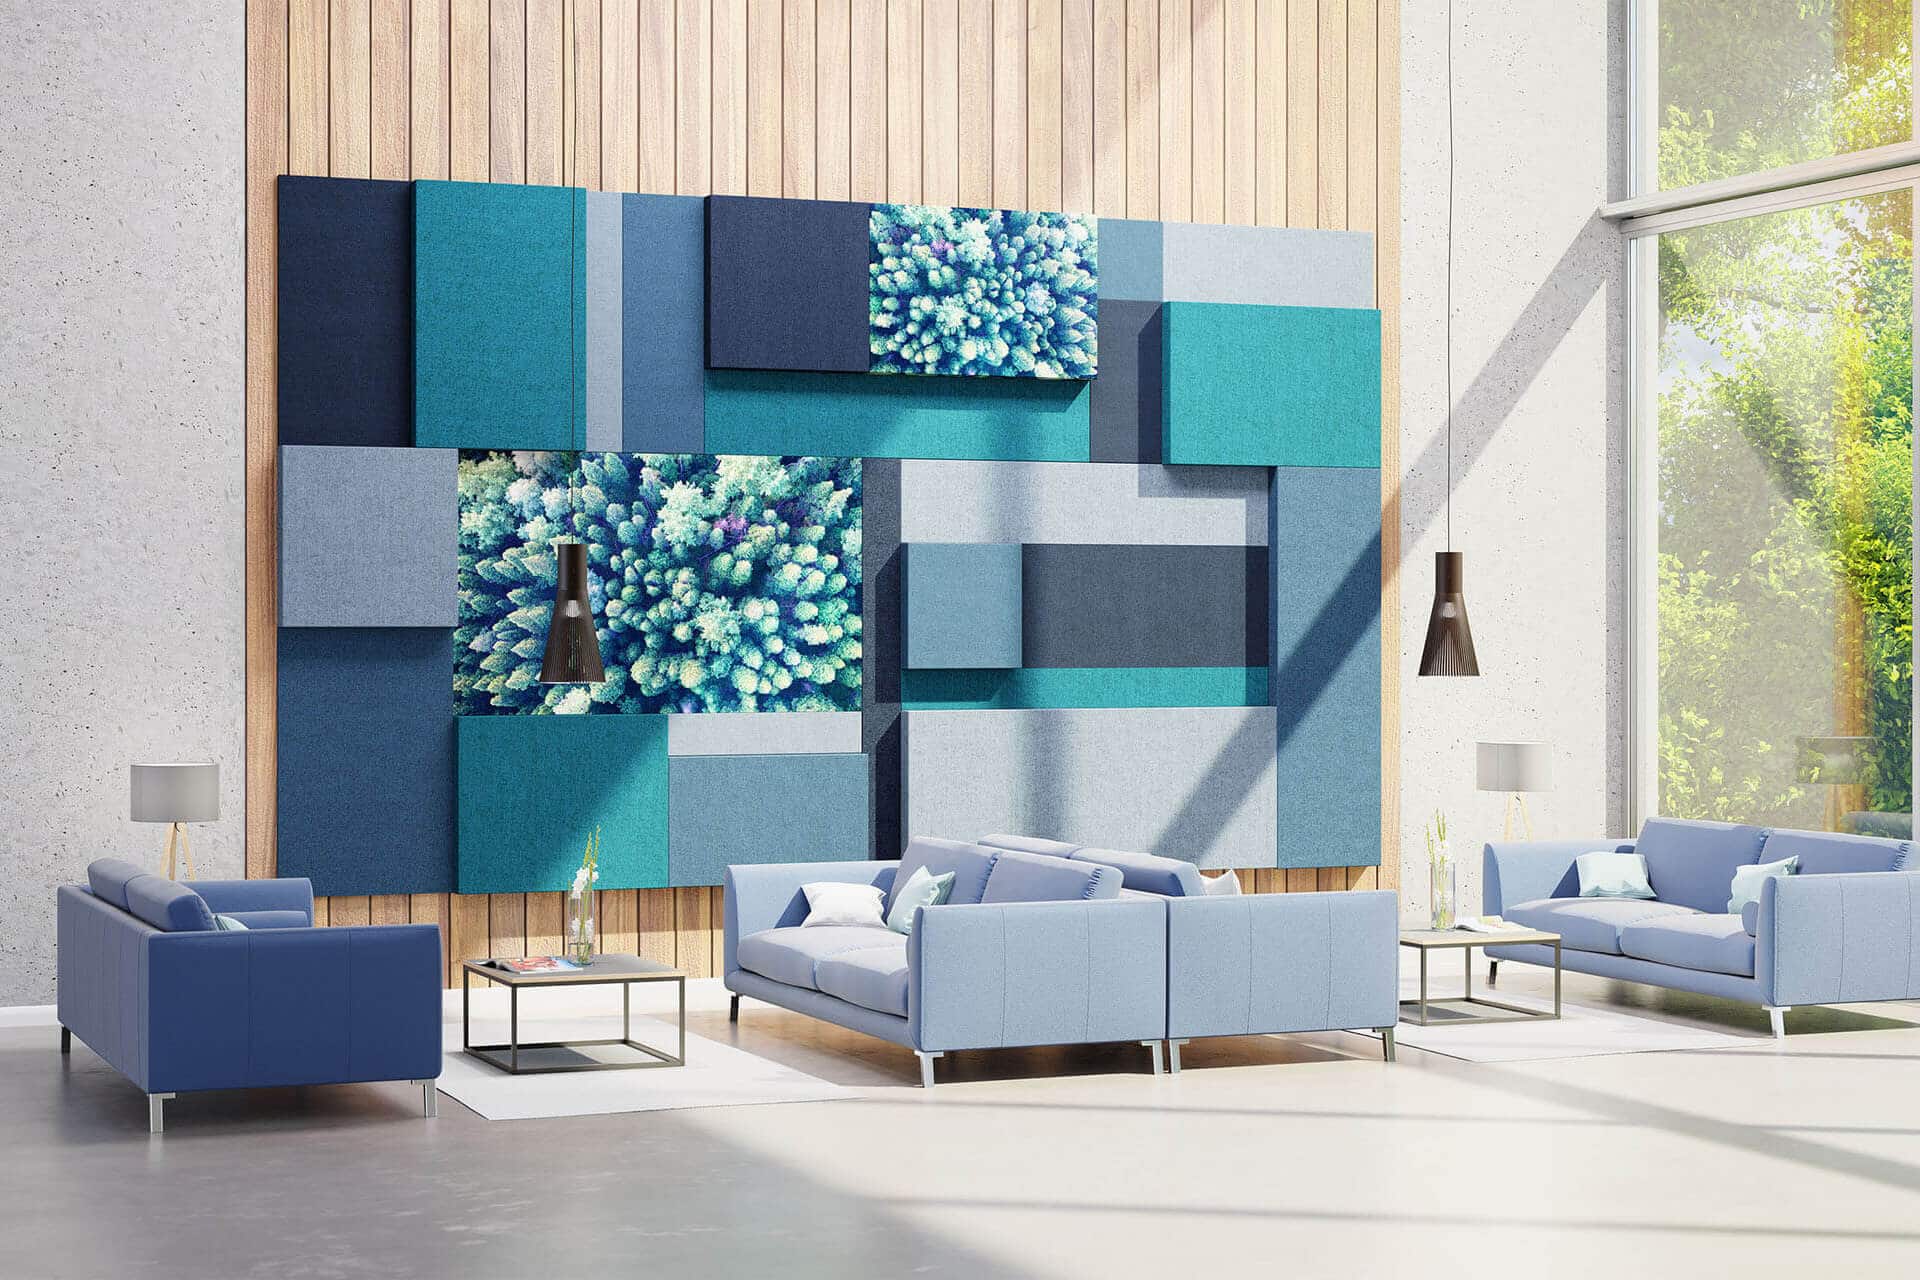 Loungebereich mit großem blauen Schallschutzelement an Wand